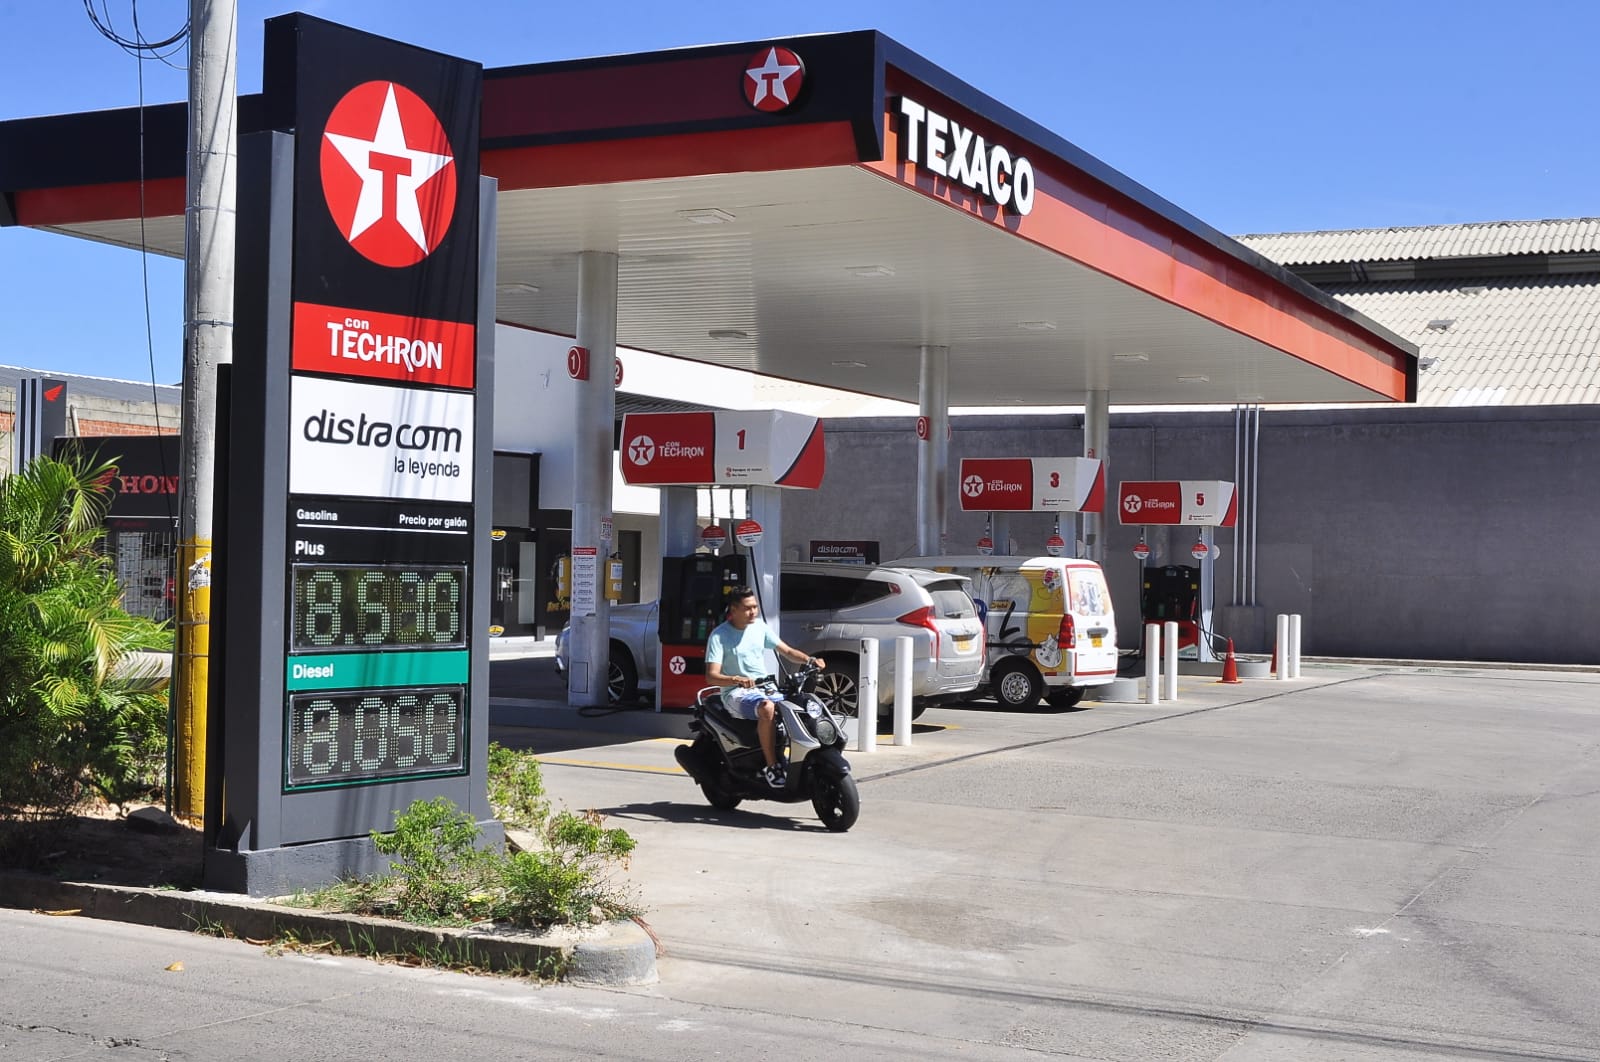 El valor promedio de un galón de gasolina corriente en Valledupar, Cesar, es $8.589                                                 / FOTO: JOAQUÍN RAMÍREZ.